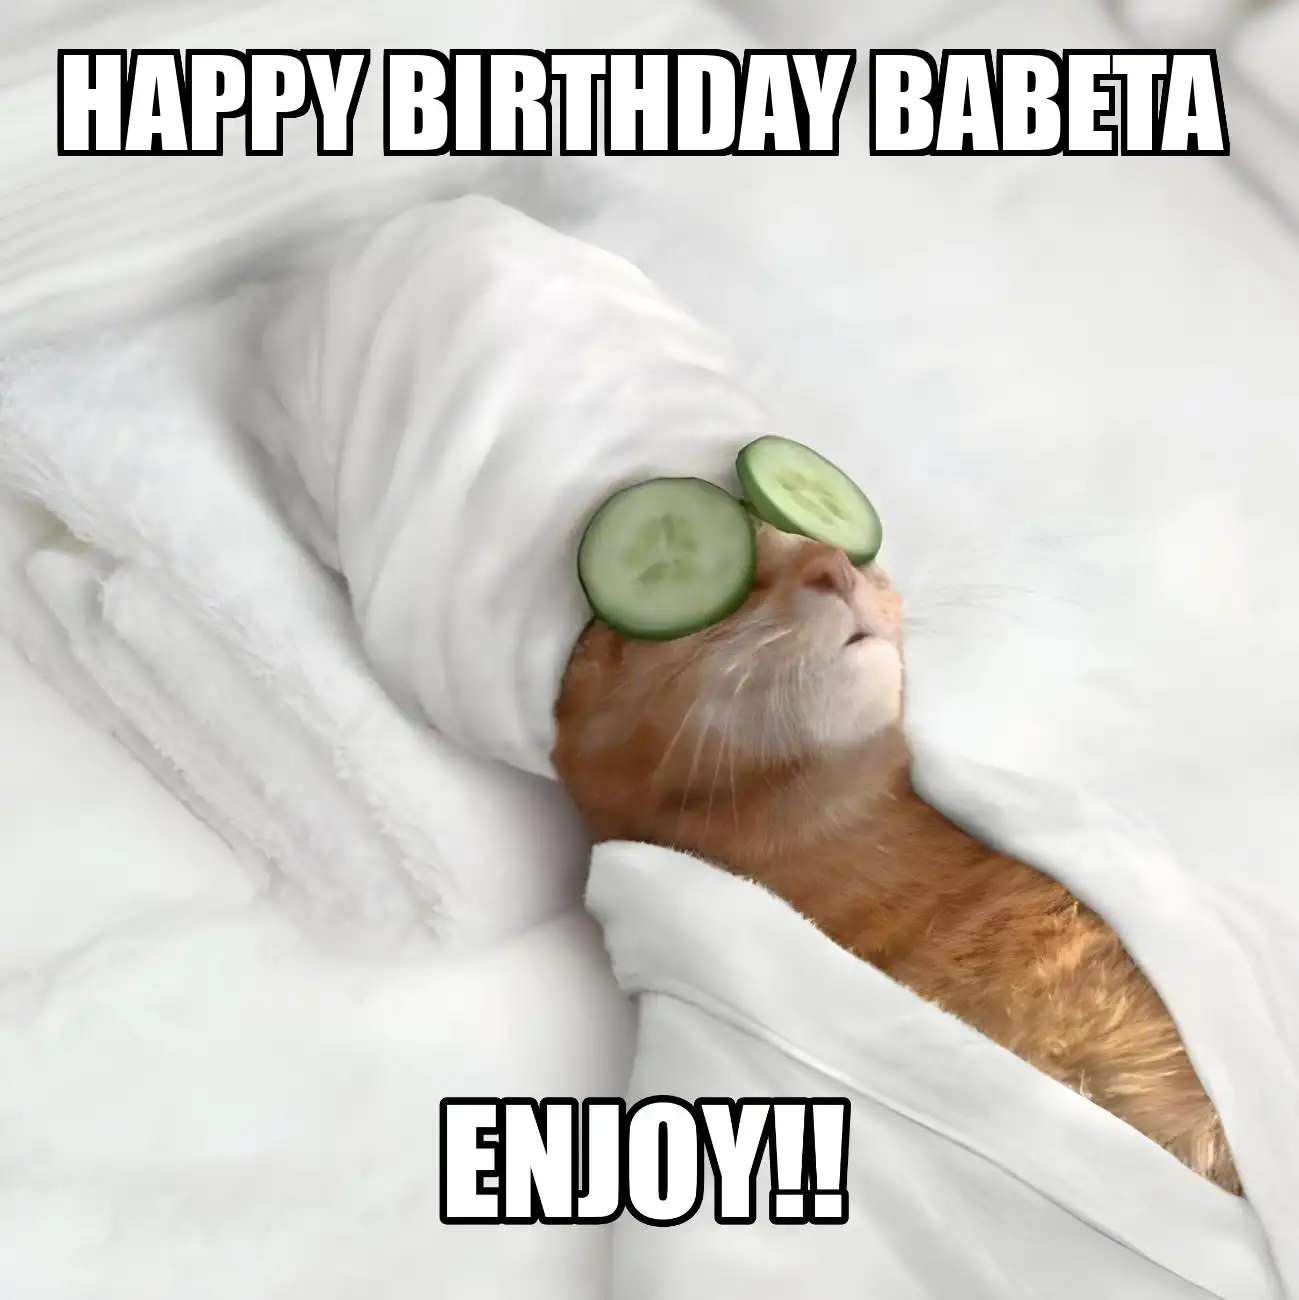 Happy Birthday Babeta Enjoy Cat Meme